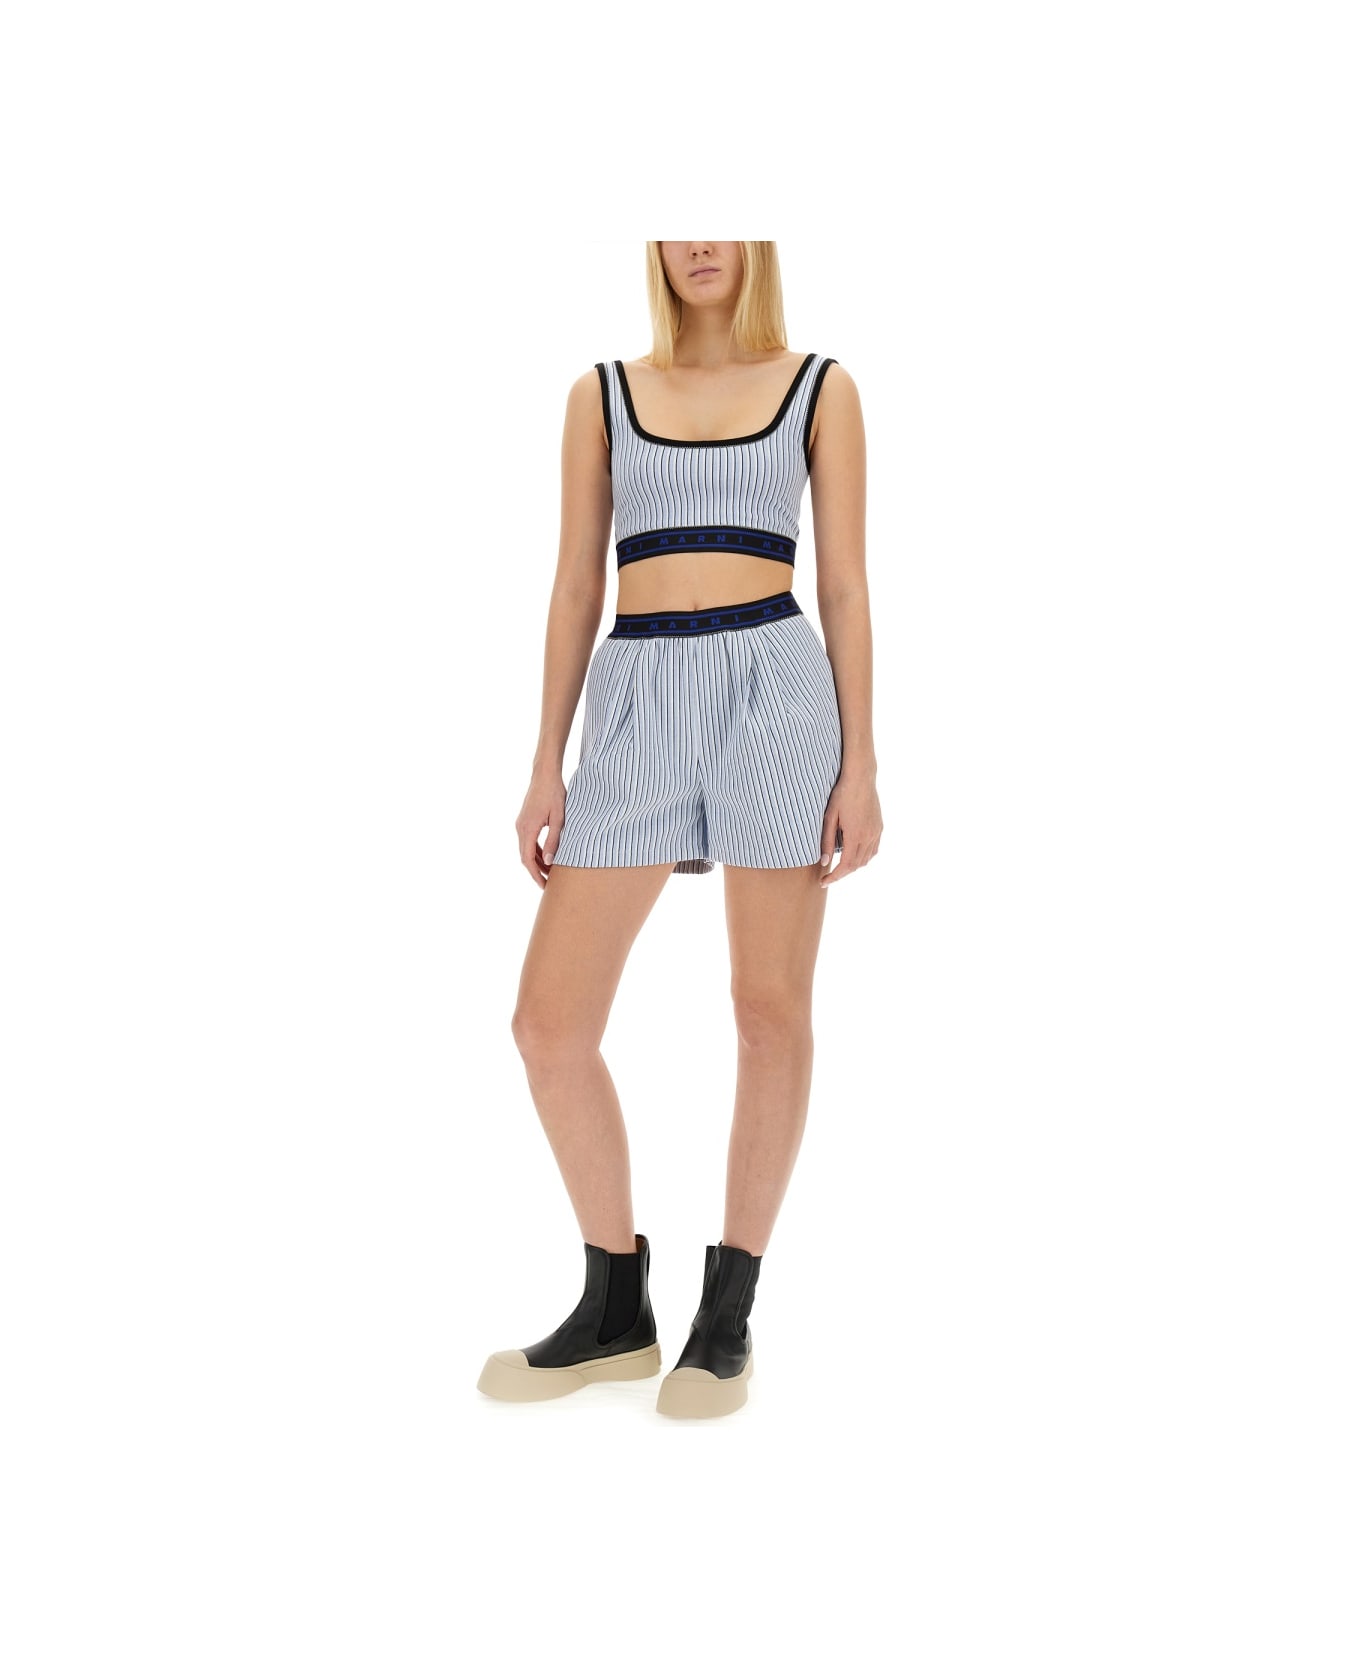 Marni Bermuda Shorts With Stripe Pattern - AZURE ショートパンツ